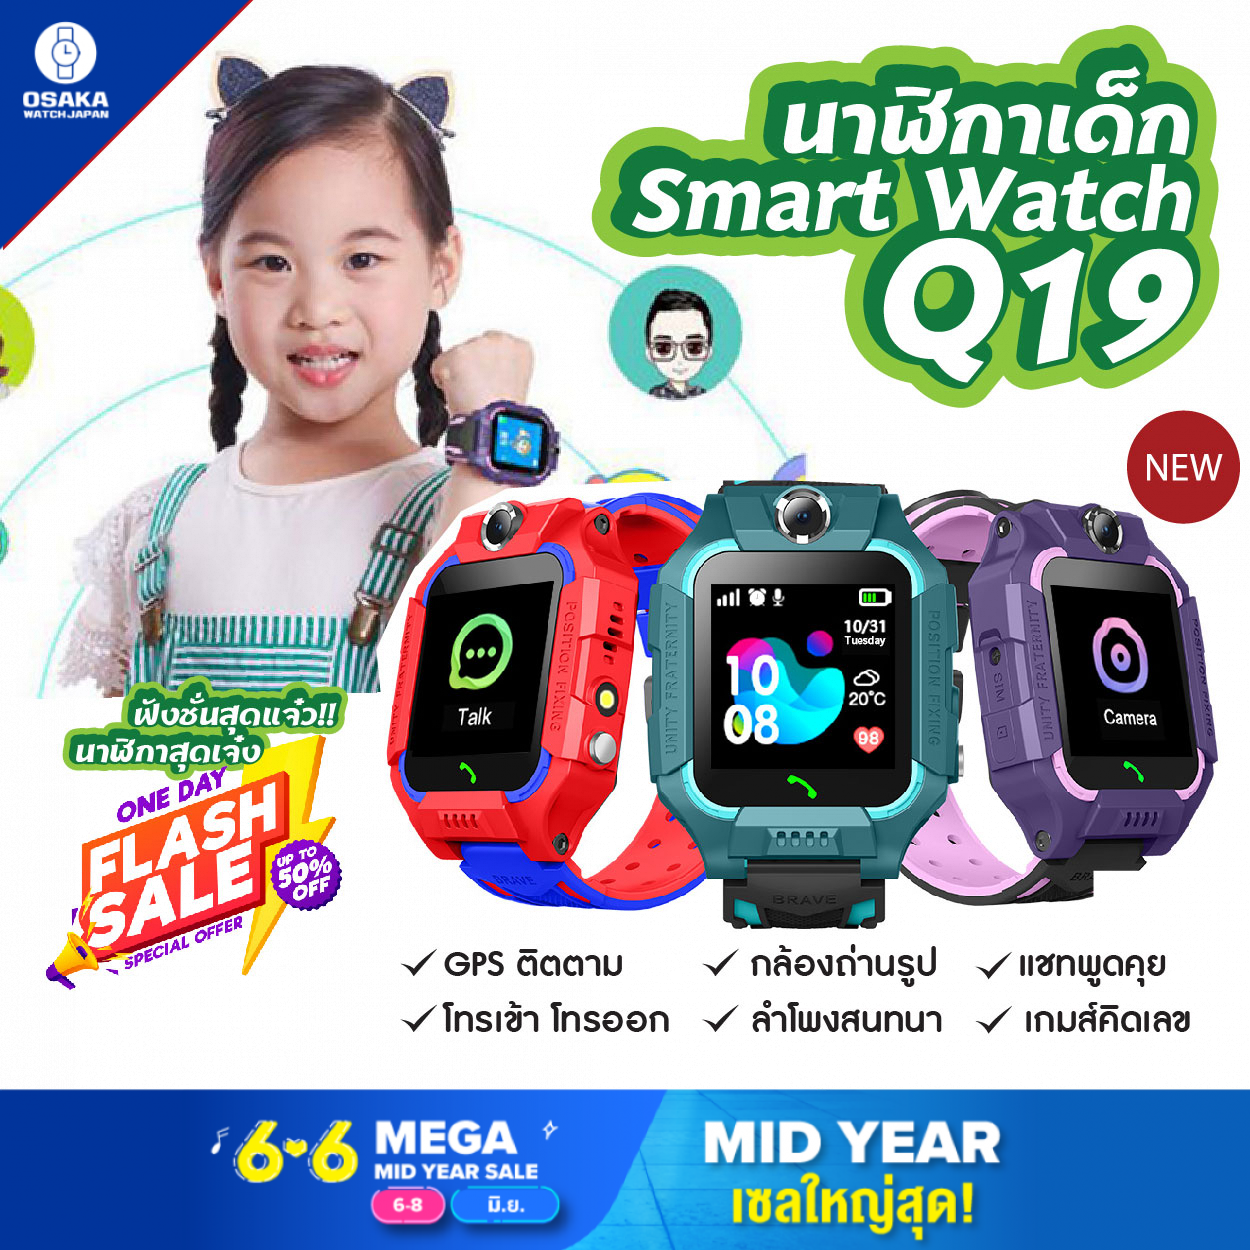 OsakaWatch Q19 นาฬิกาสมาทวอช เมนูภาษาไทย กันน้ำ SmartWatches นาฬิกาข้อมือเด็ก นาฬิกาโทรศัพท์ GPS ติดตามตำแหน่ง smart watch สมาร์ทวอทช์ สมาร์ทวอทช์เด็ก นาฬิกาออกกำลัง สายรัดข้อมือ นาฬิกาสมาทวอช PK IMOO z6